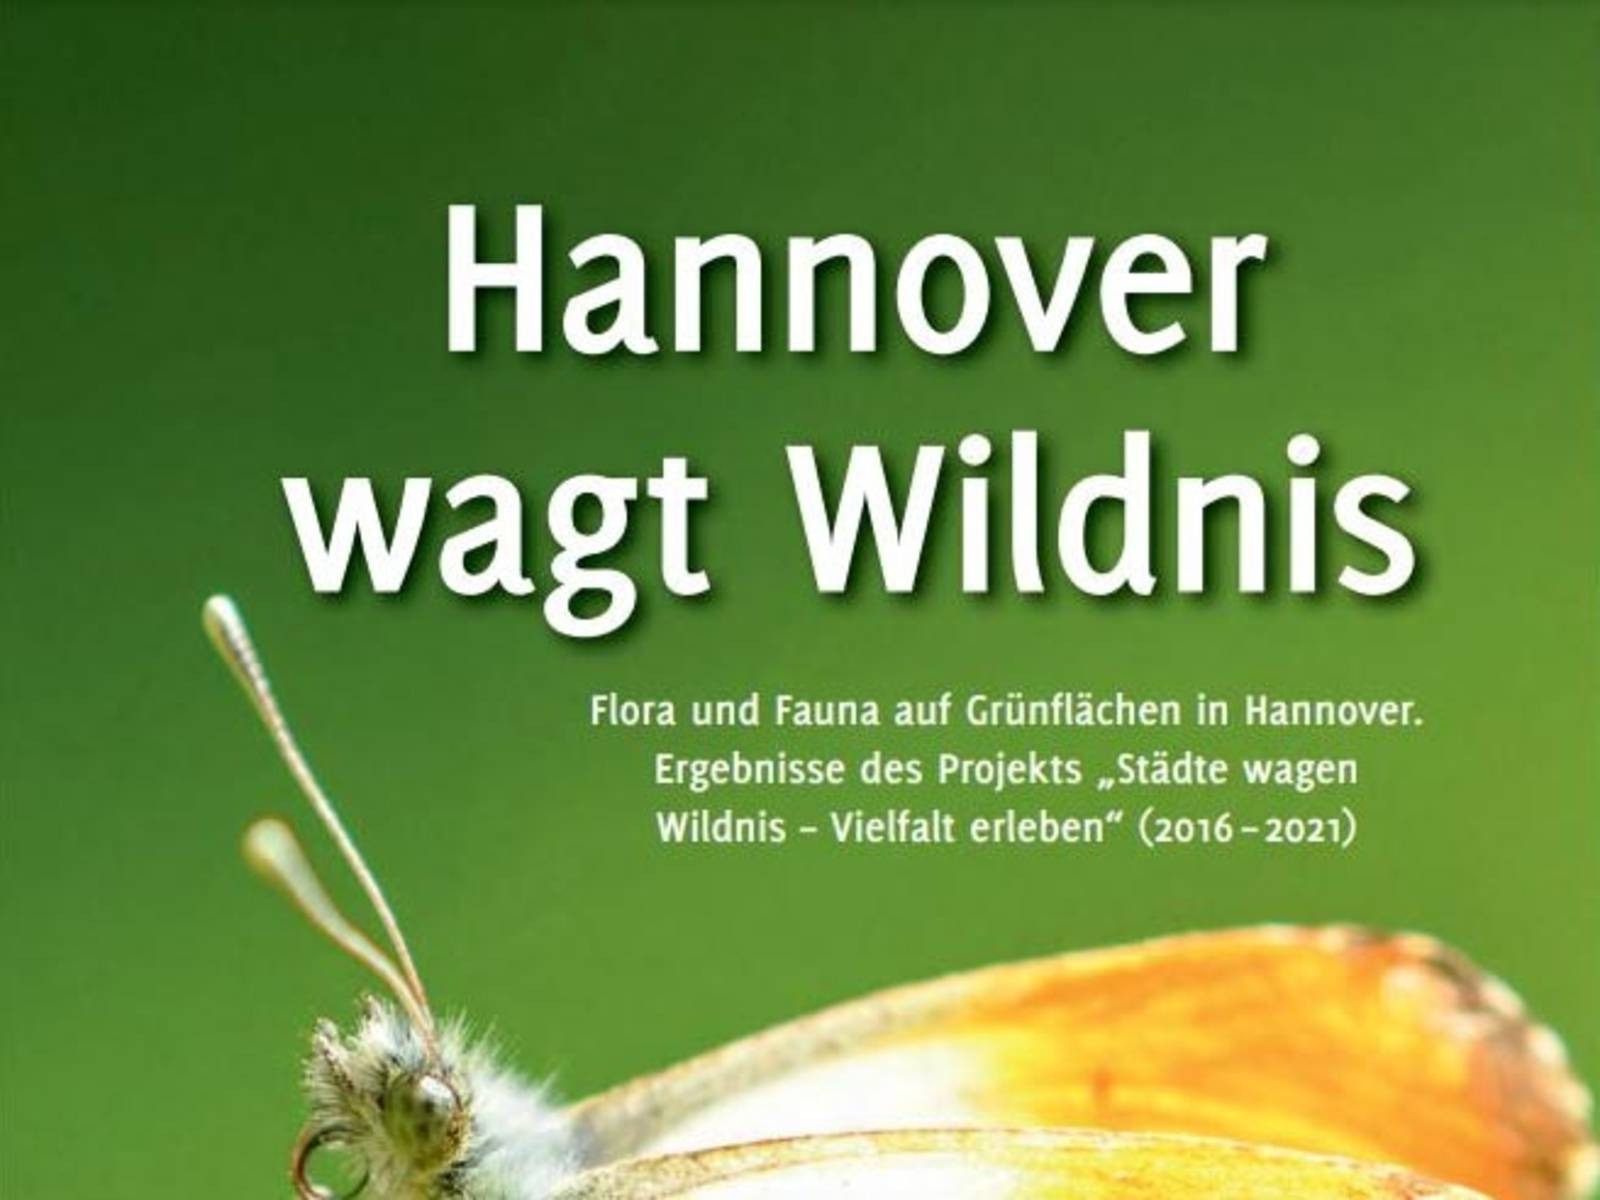 Titelbild einer Publikation. Darauf steht "Hannover wagt Wildnis".